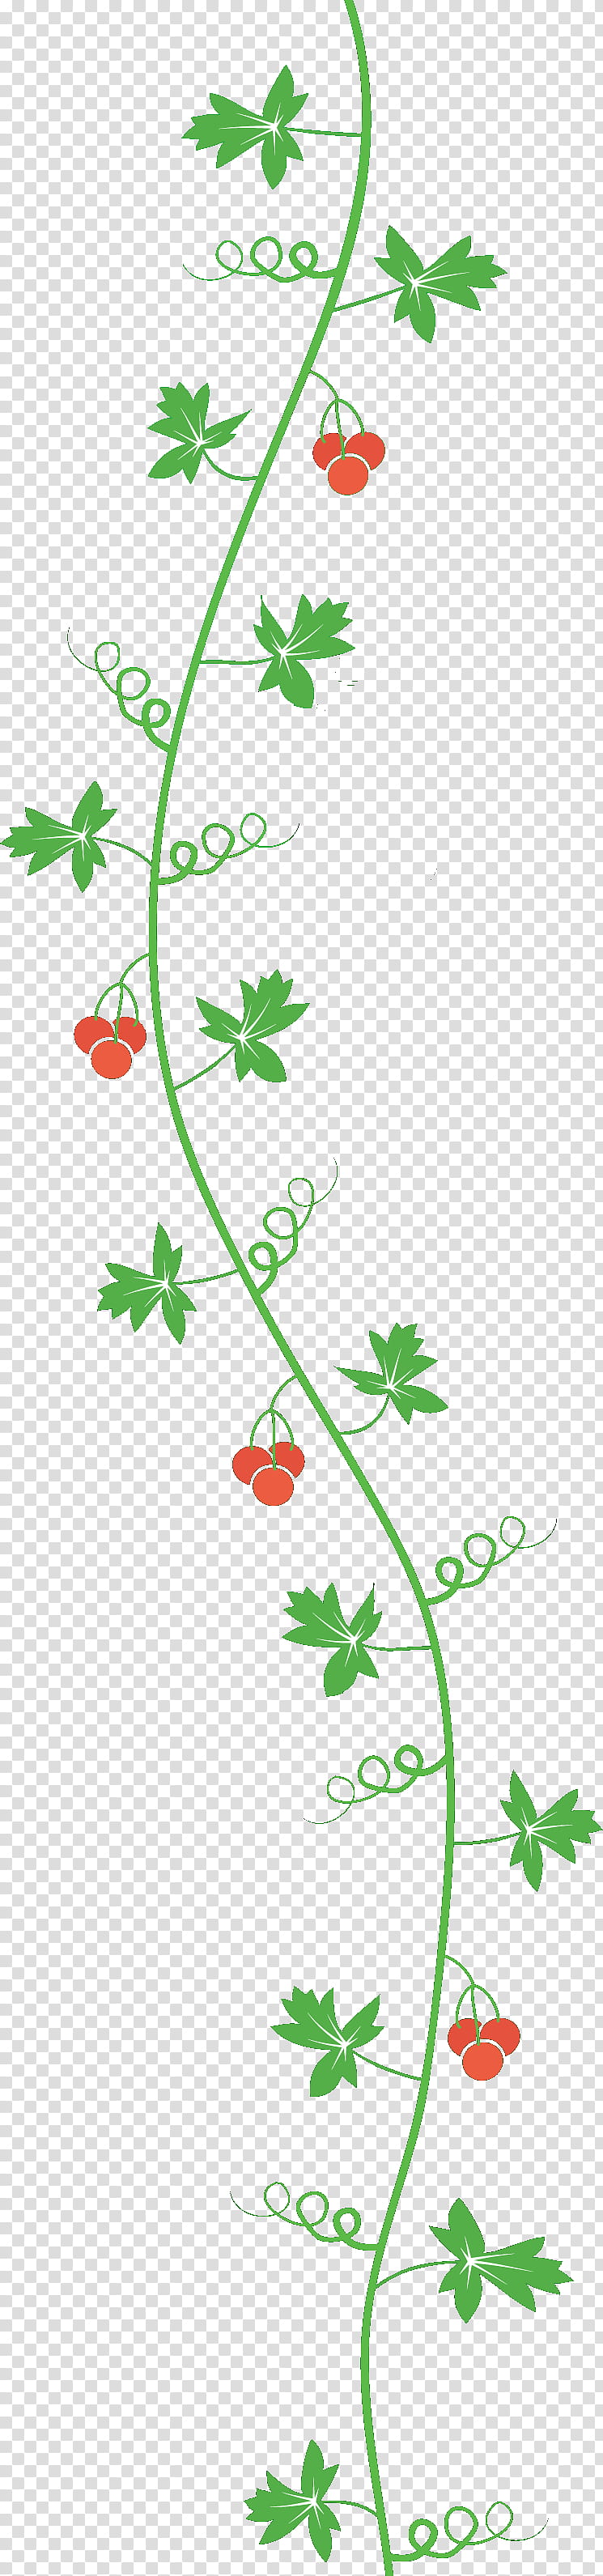 leaf border, Plant, Flower, Branch, Plant Stem transparent background PNG clipart